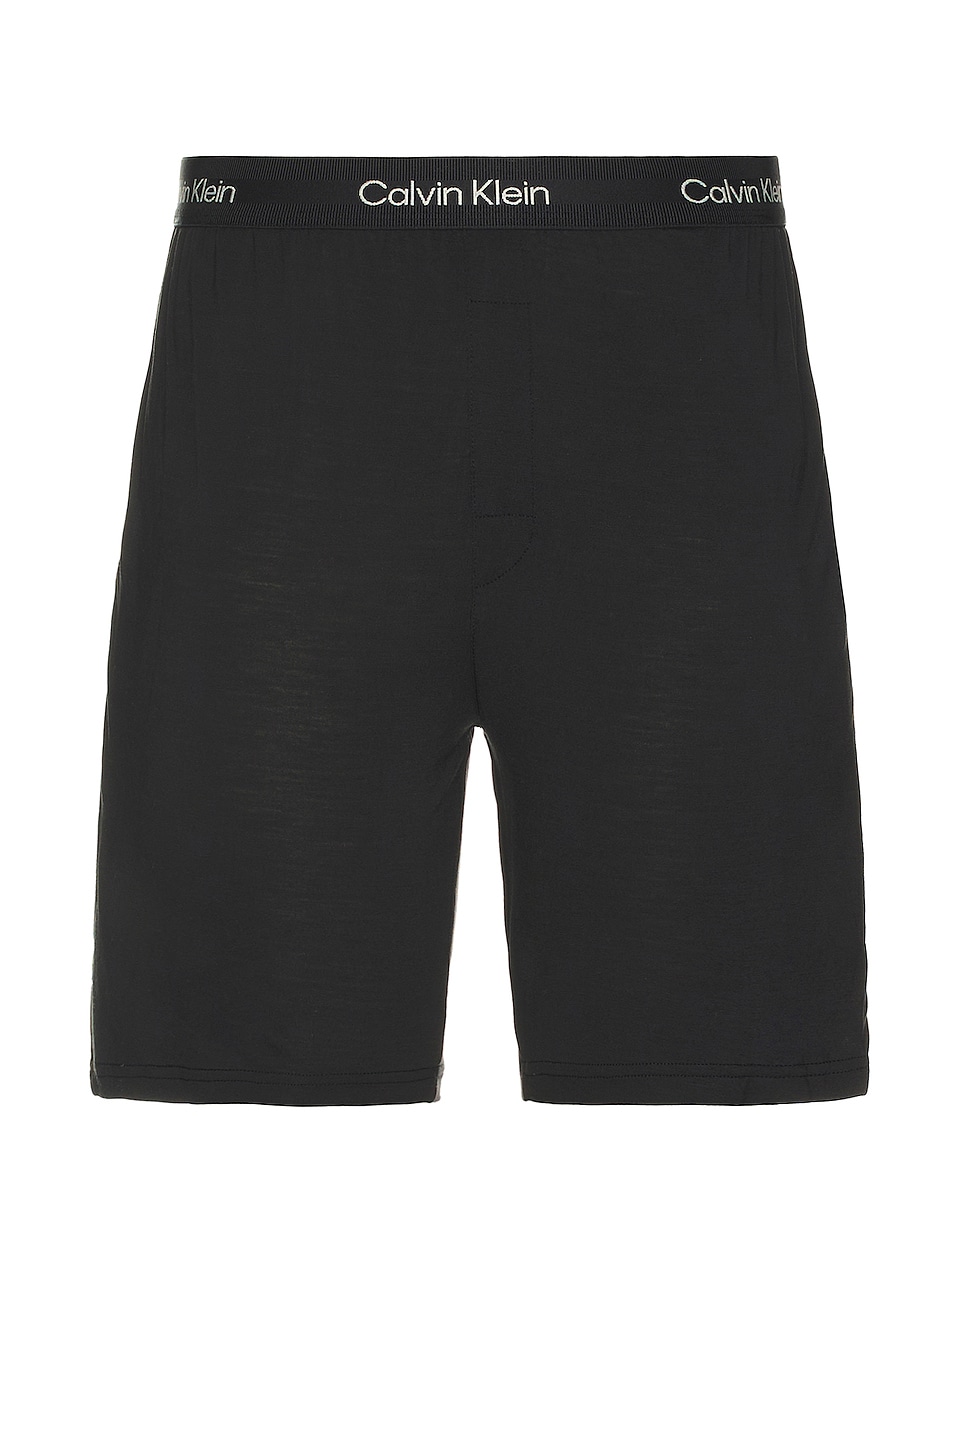 tremendous Calvin Klein Underwear Short | Sleep REVOLVE in Black